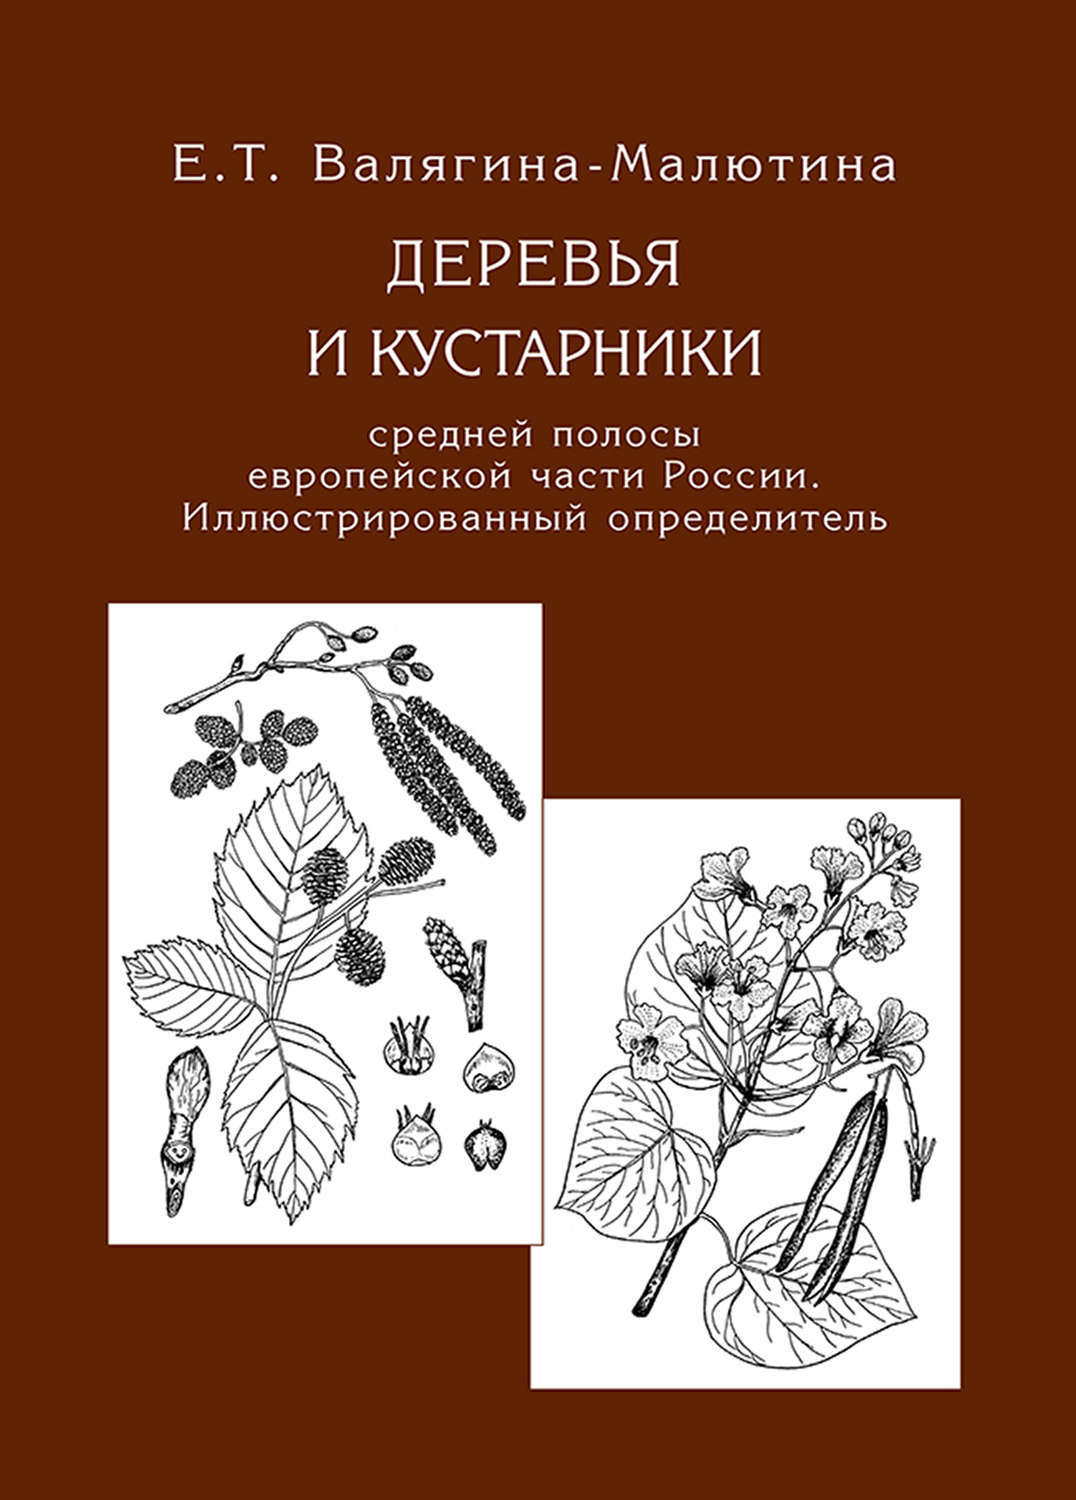 Книга «деревья и кустарники средней полосы европейской части России»